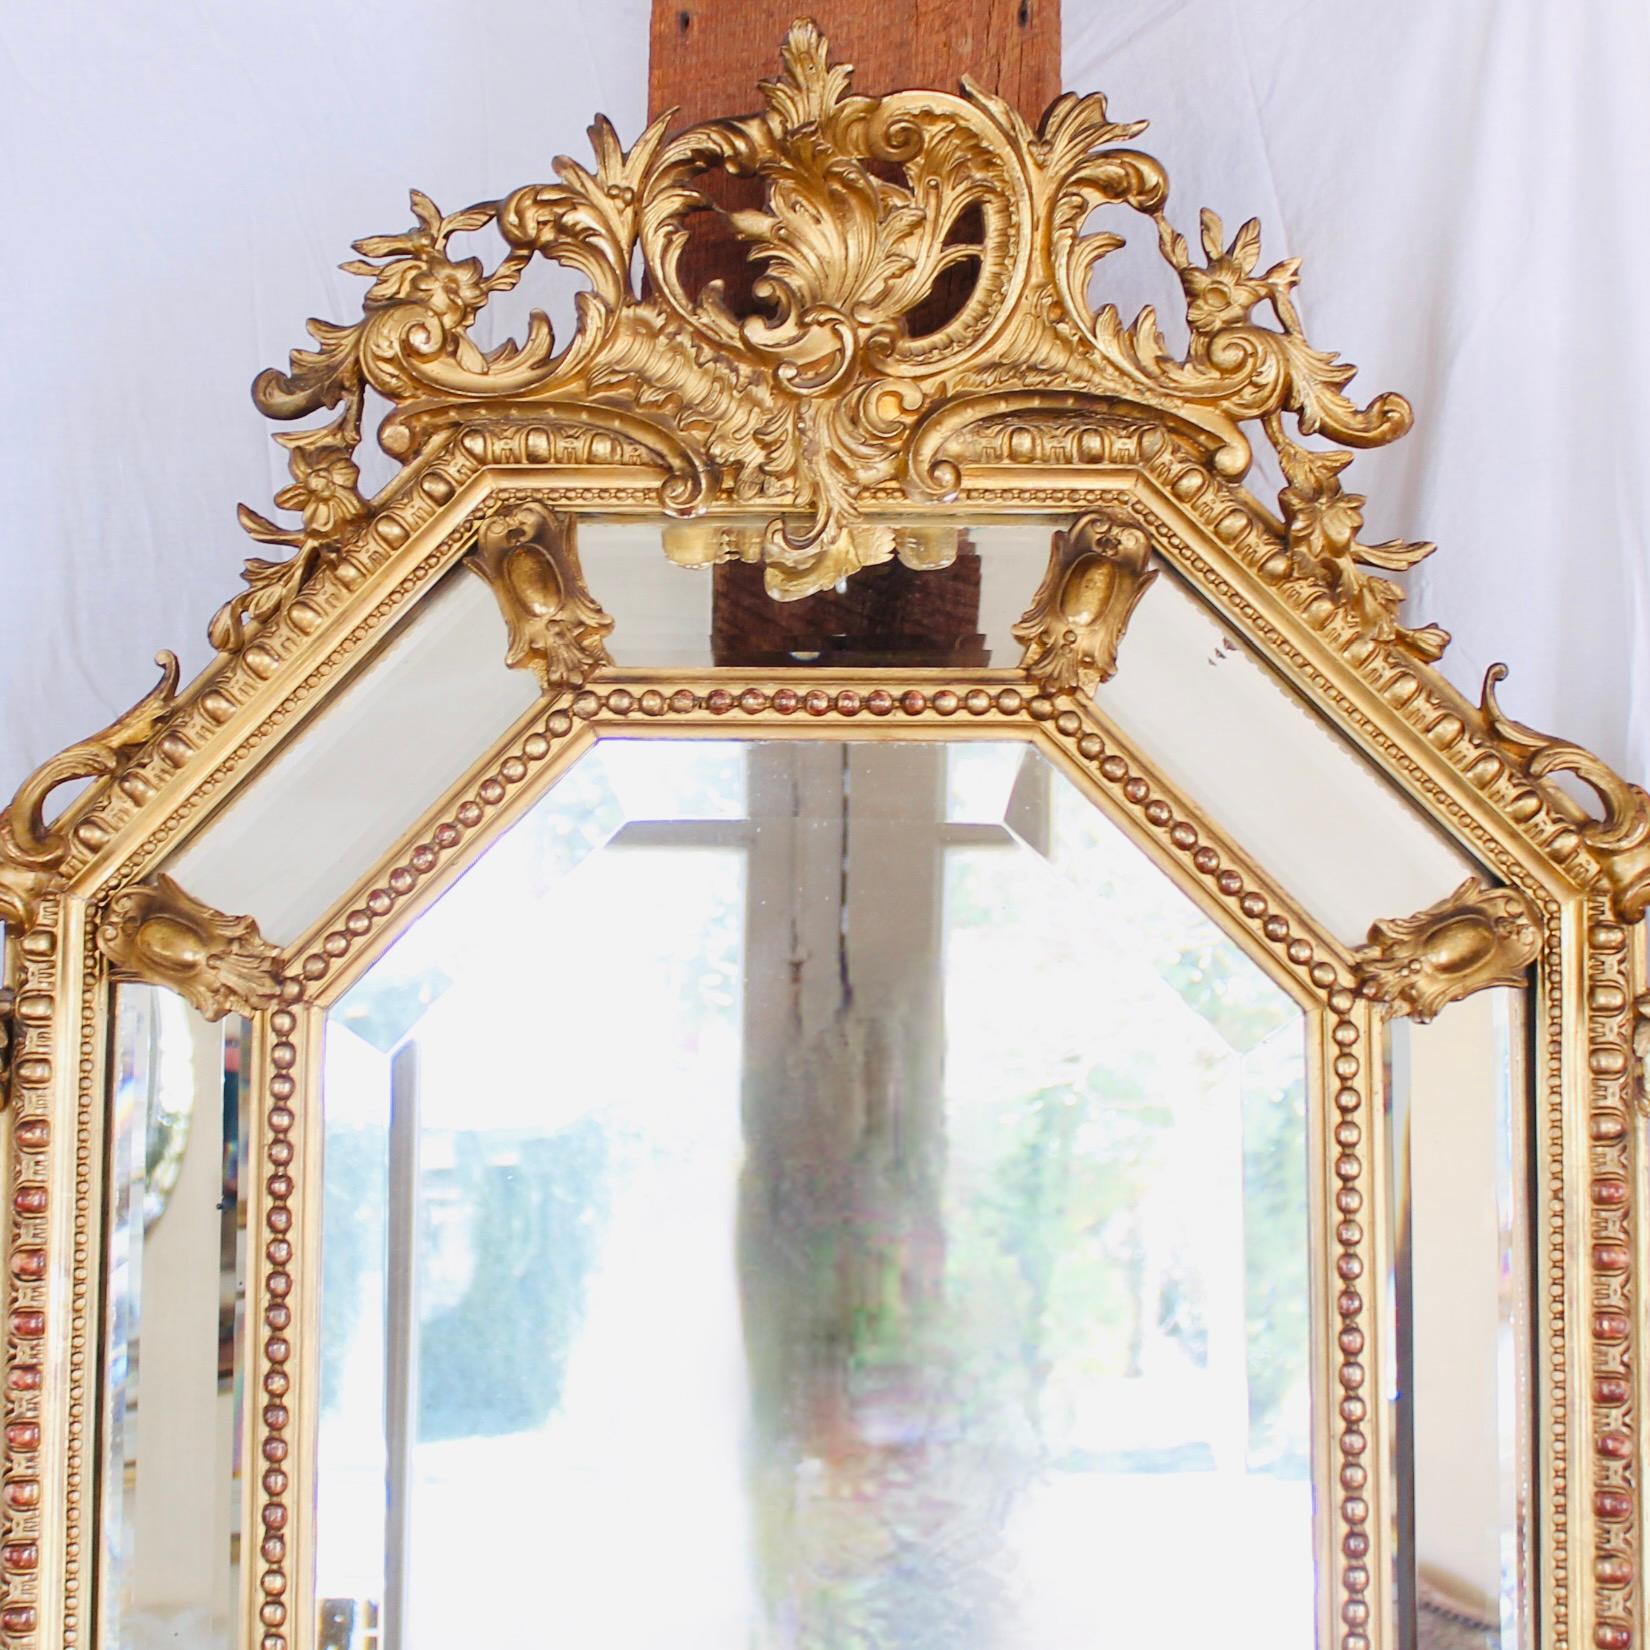 Ein auffälliges Konfekt aus Rokoko-Dekorelementen, kombiniert in einem Kissenspiegel mit nüchternen, klassizistischen Architekturformen: Ei und Abnäher mit Perleneinfassung, die in einem achteckigen Format um eine zentrale Spiegelplatte angeordnet